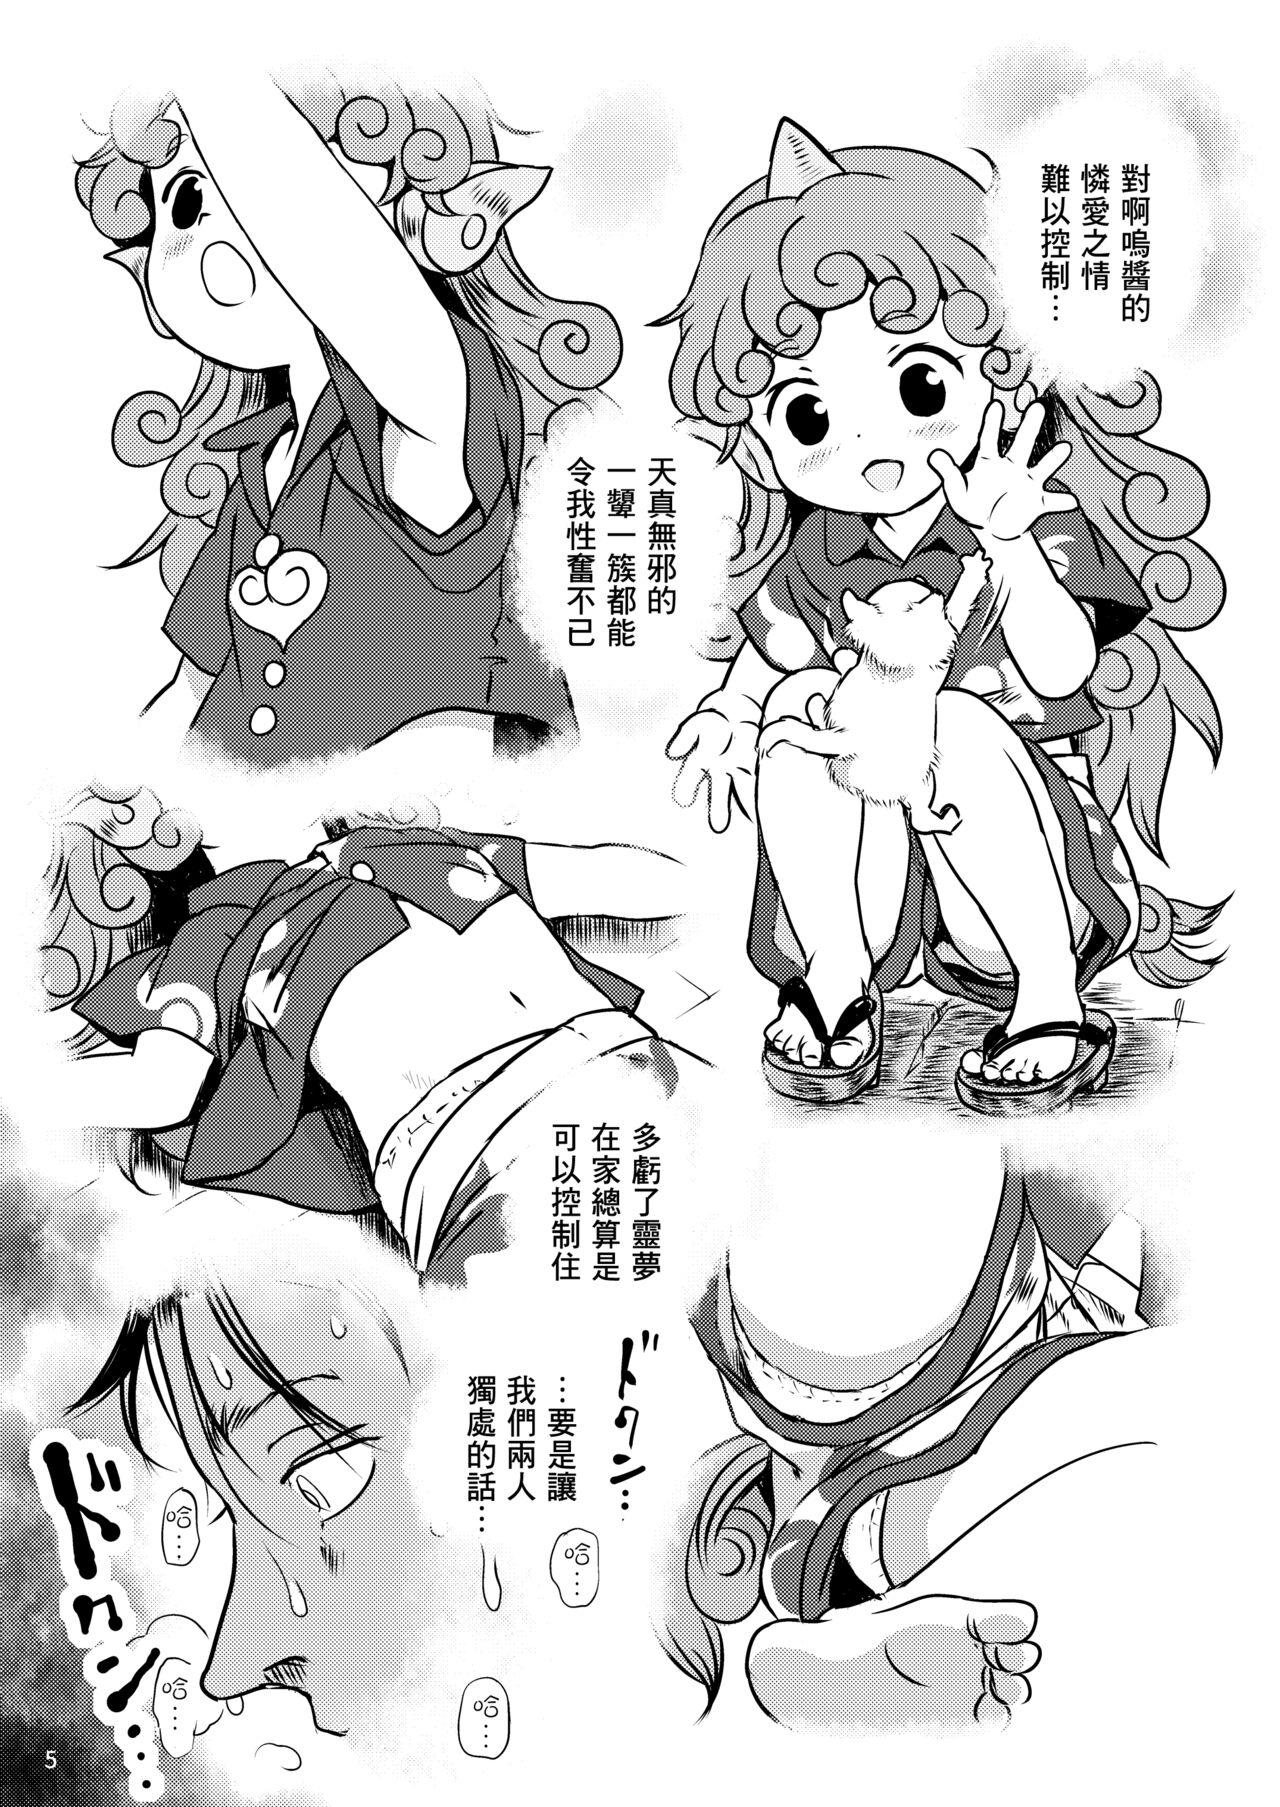 Bunda Haratte! Aun-chan! - Touhou project Jerk - Page 6